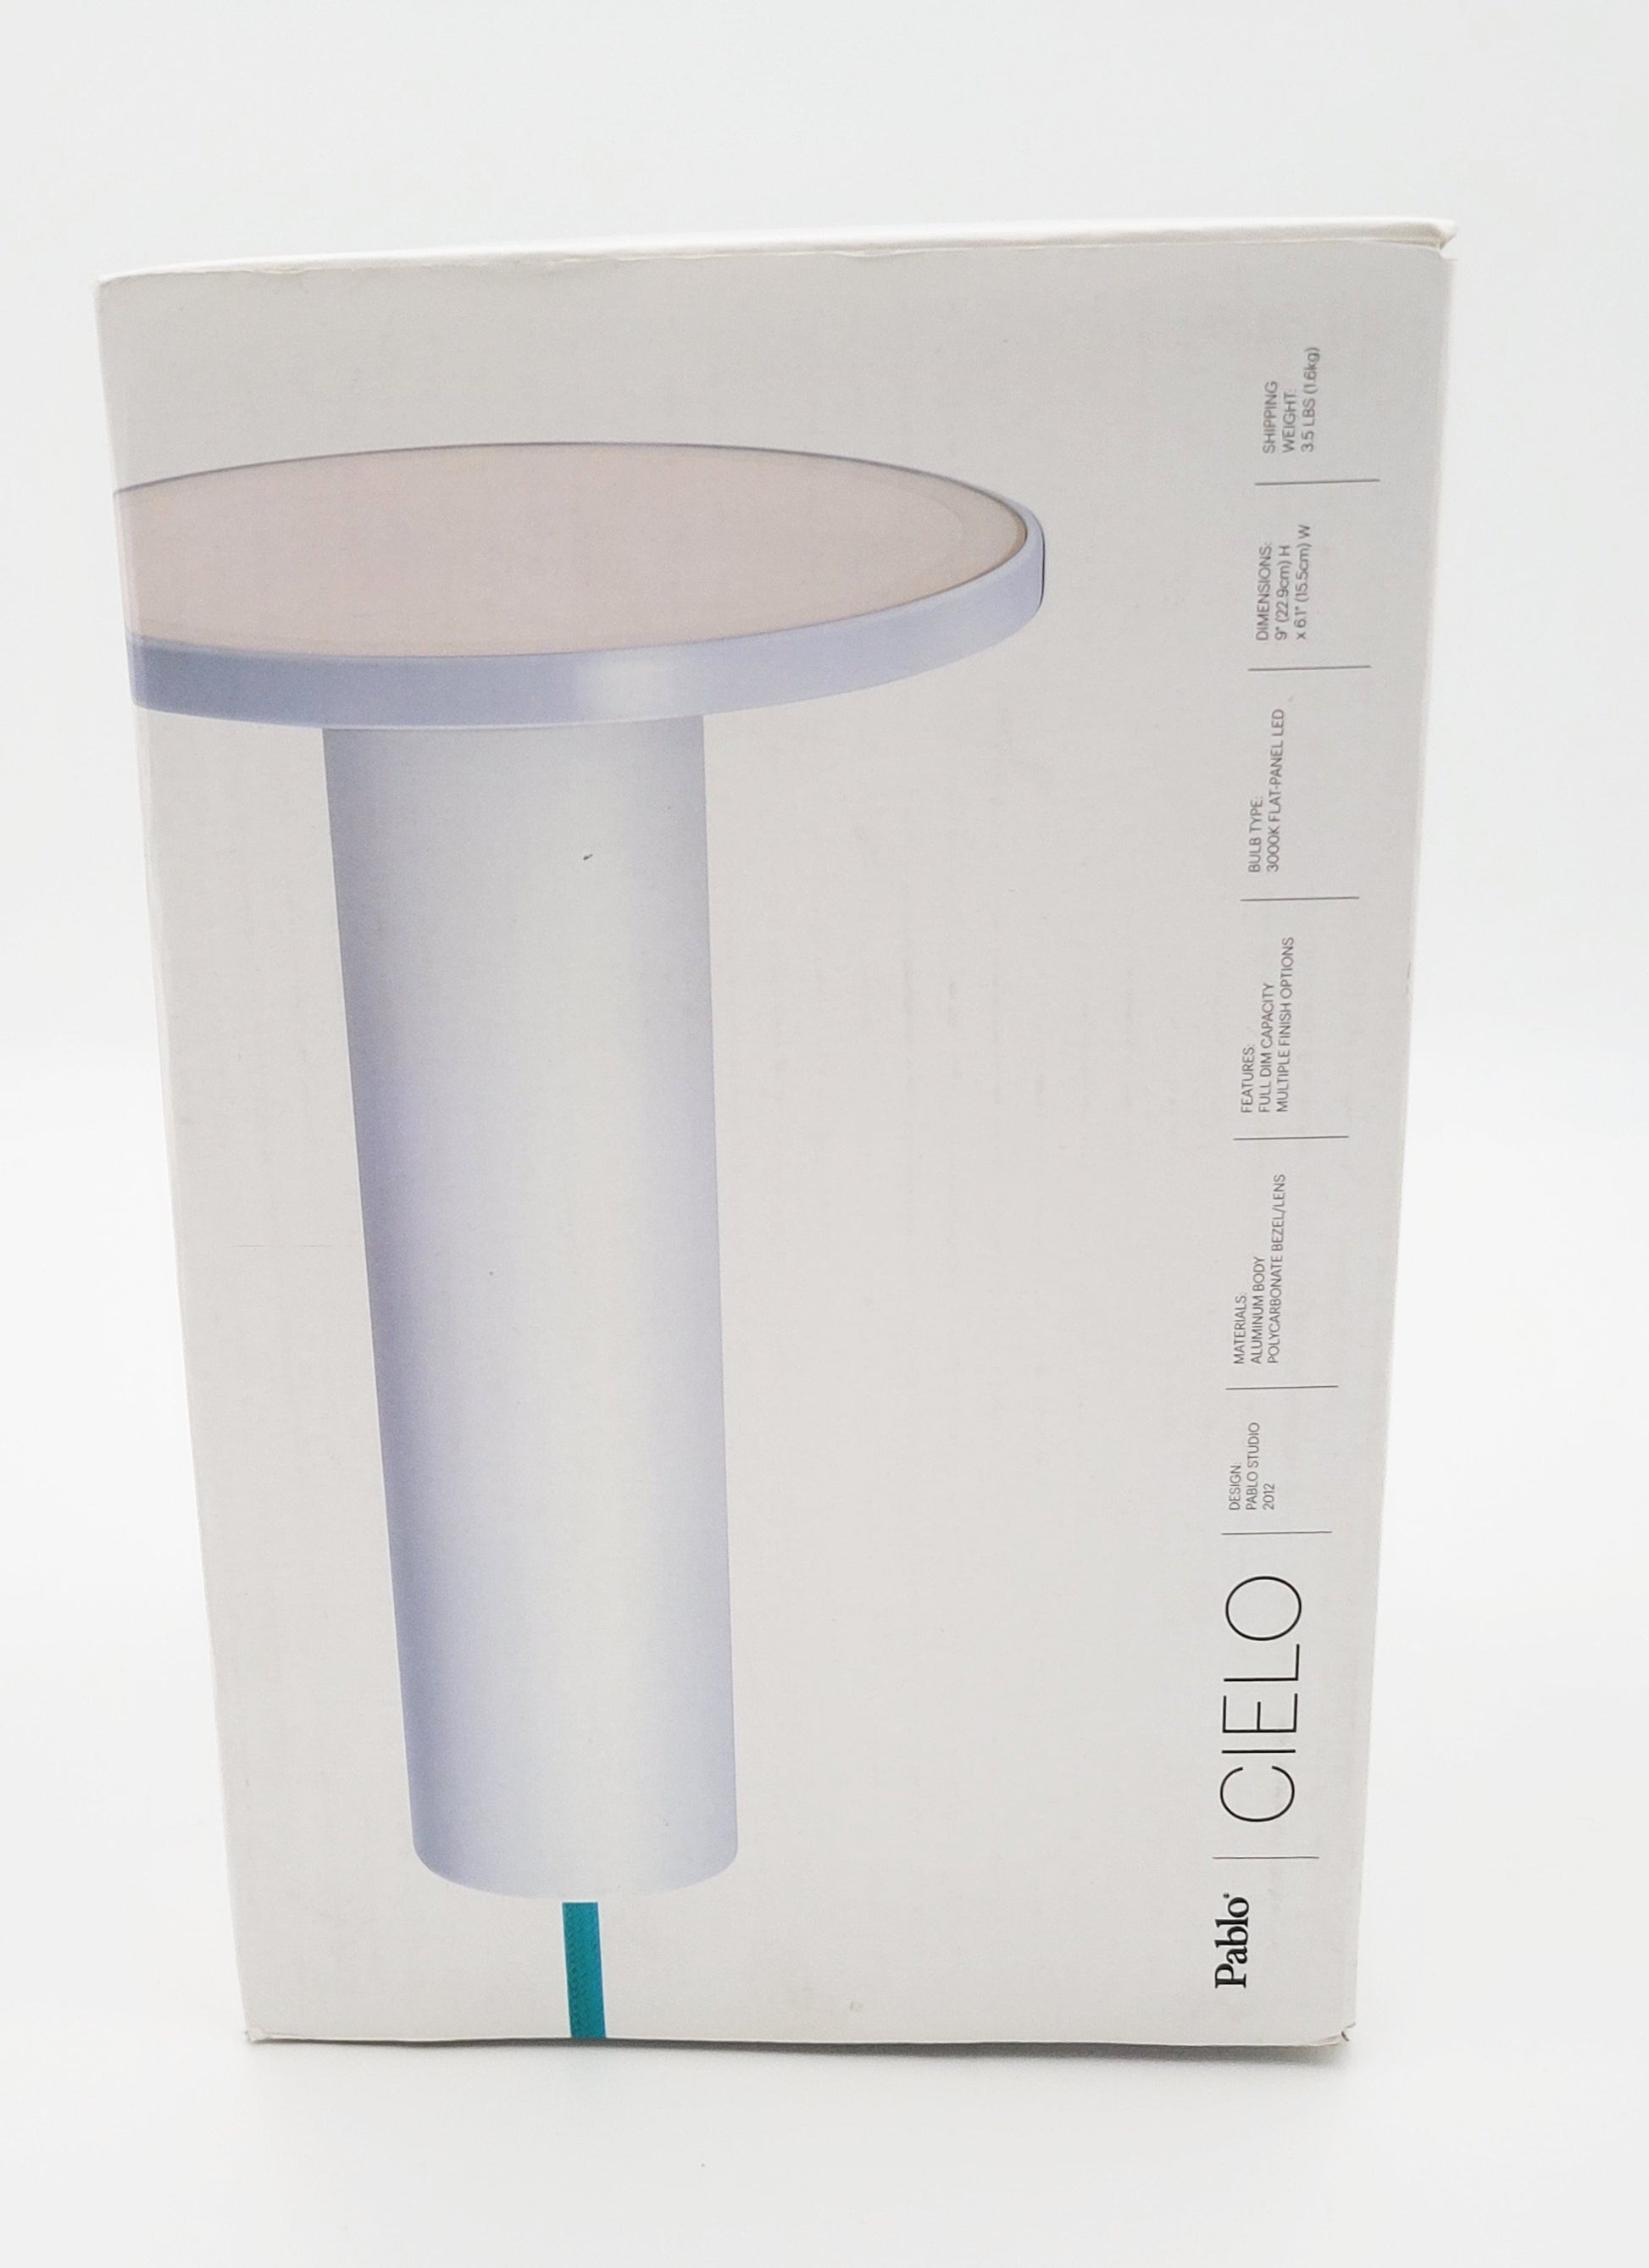 Pablo Cielo Lamps Pablo Designs "Cielo" Minimalist LED Pendant Light White Tomato Copper NIB